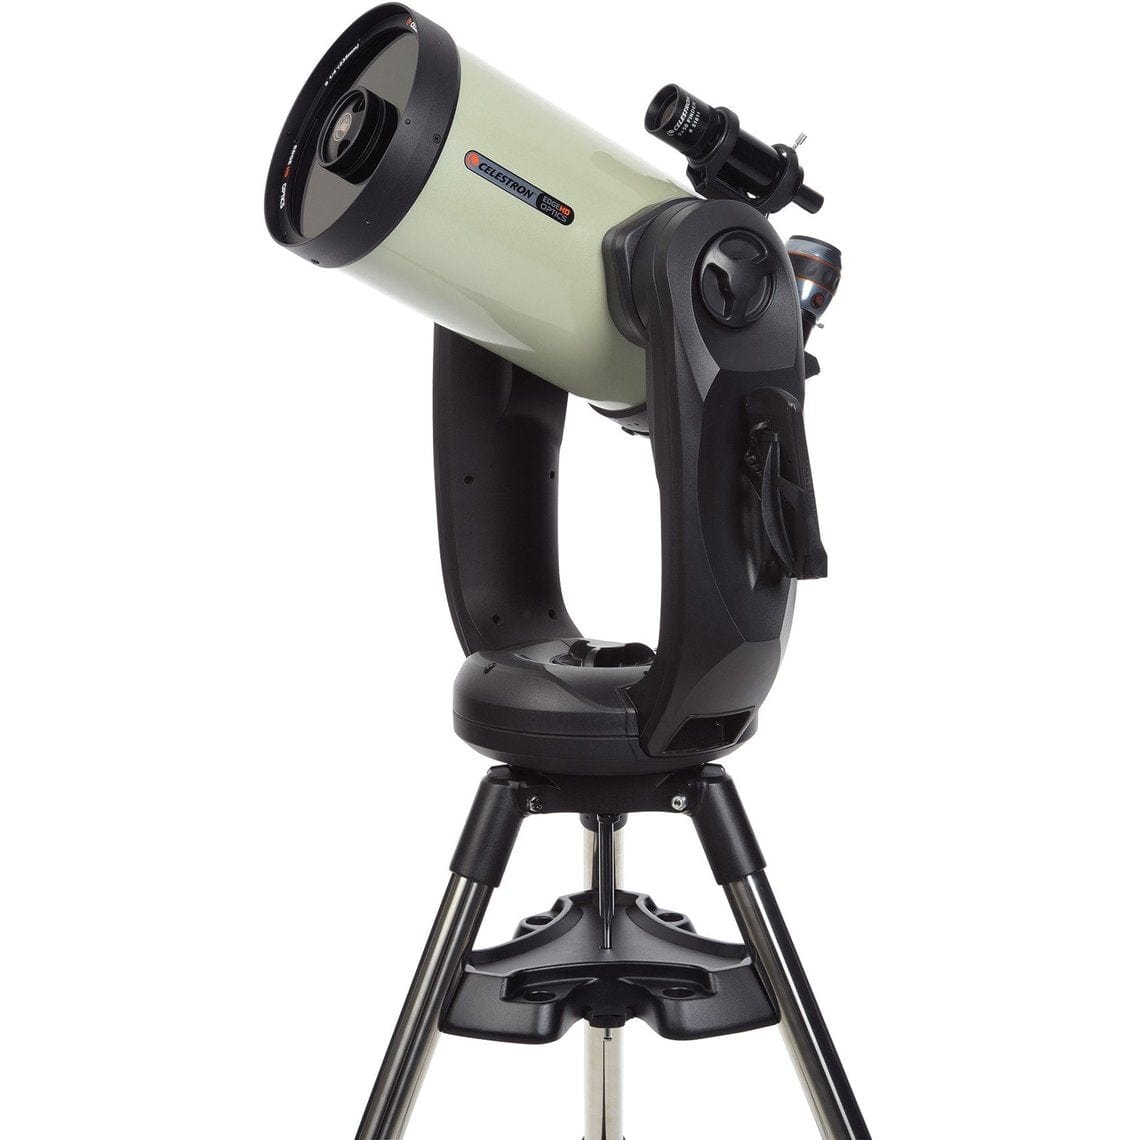 Celestron Telescope Celestron CPC Deluxe 925 EdgeHD - 11008